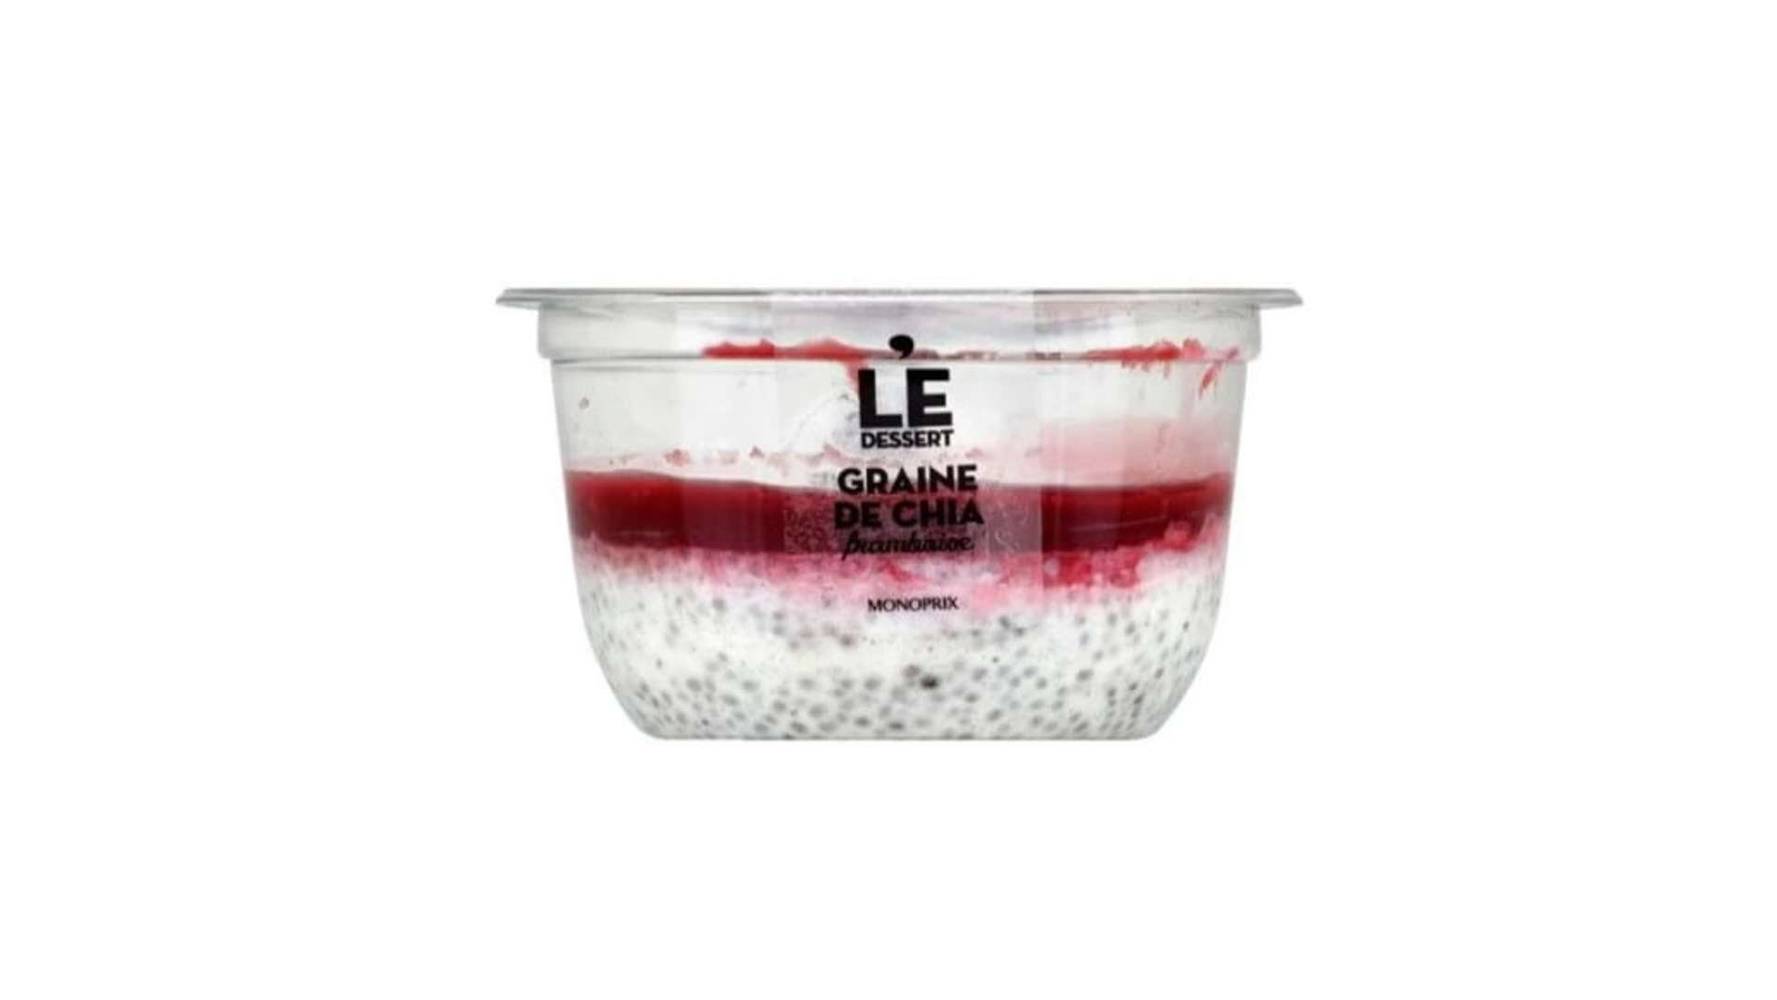 Monoprix Graines de chia framboise - Le Dessert Le pot de 120 g